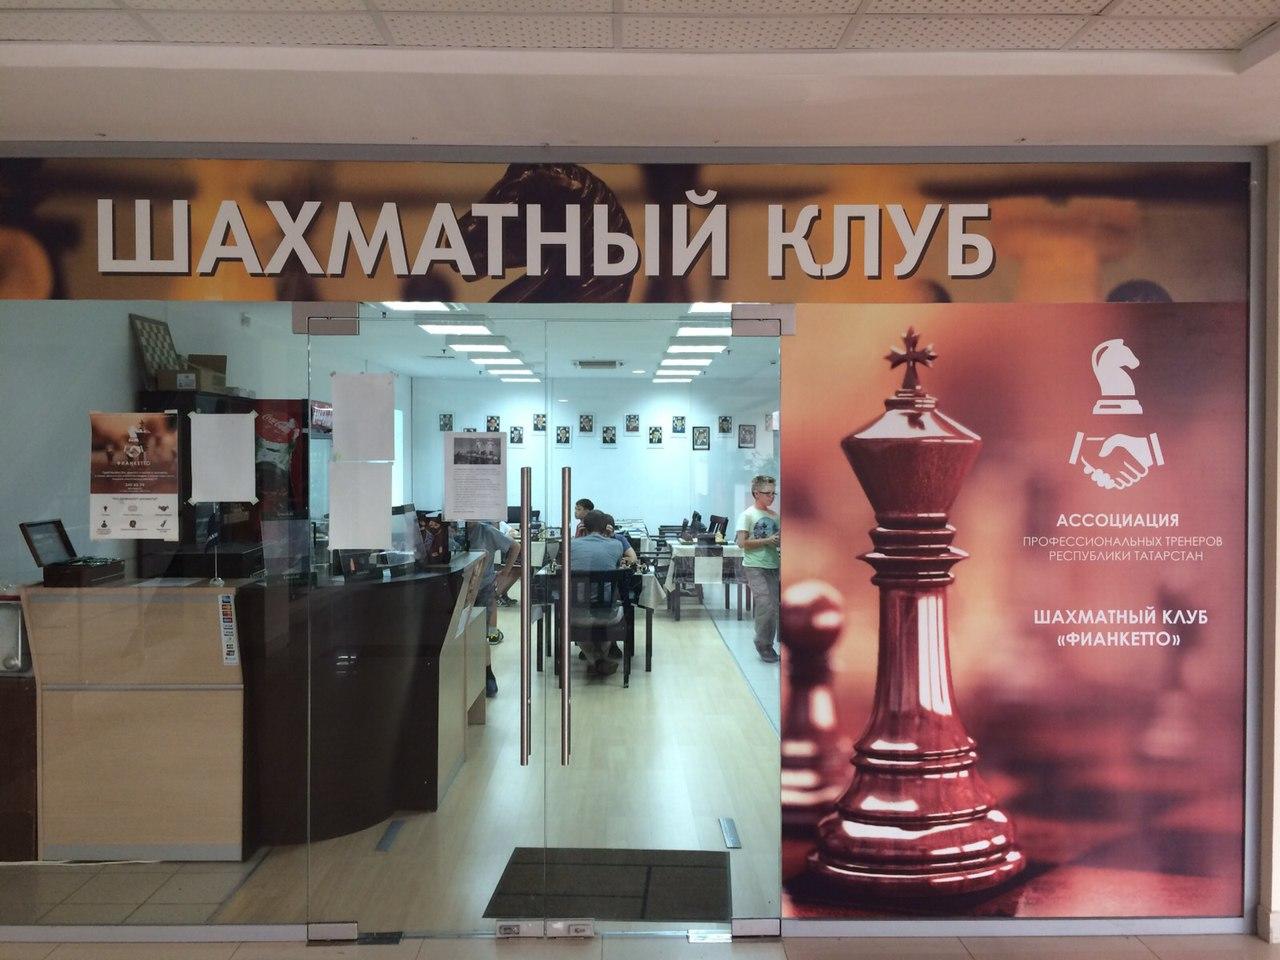 Объявление о турнирах по шахматам